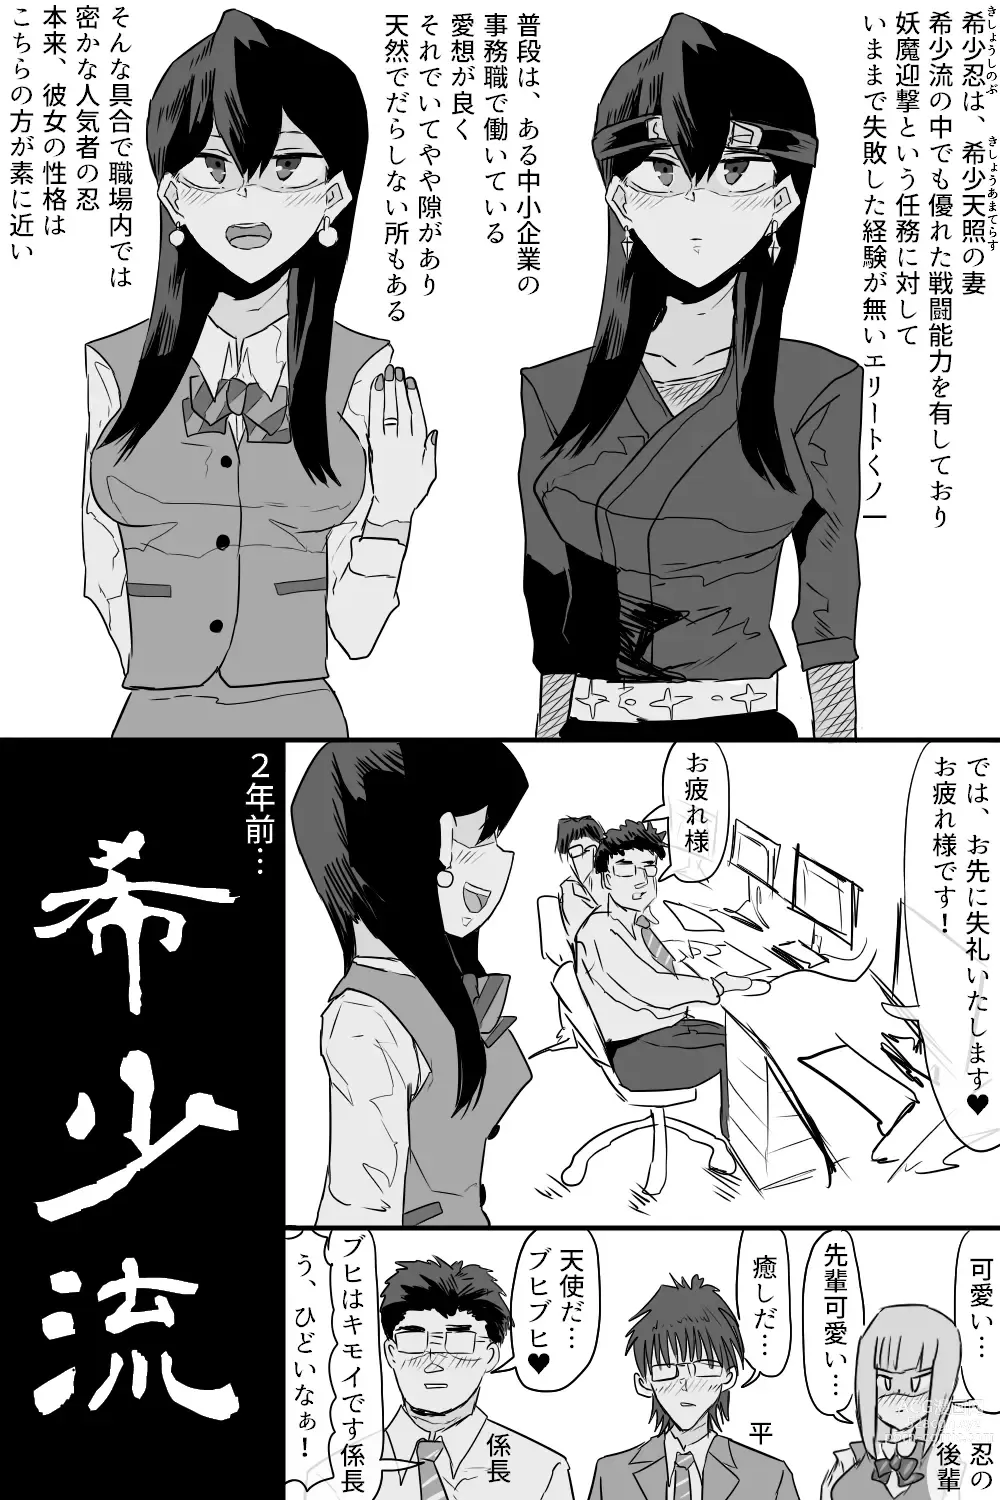 Page 3 of doujinshi Kishouchou no Juunin